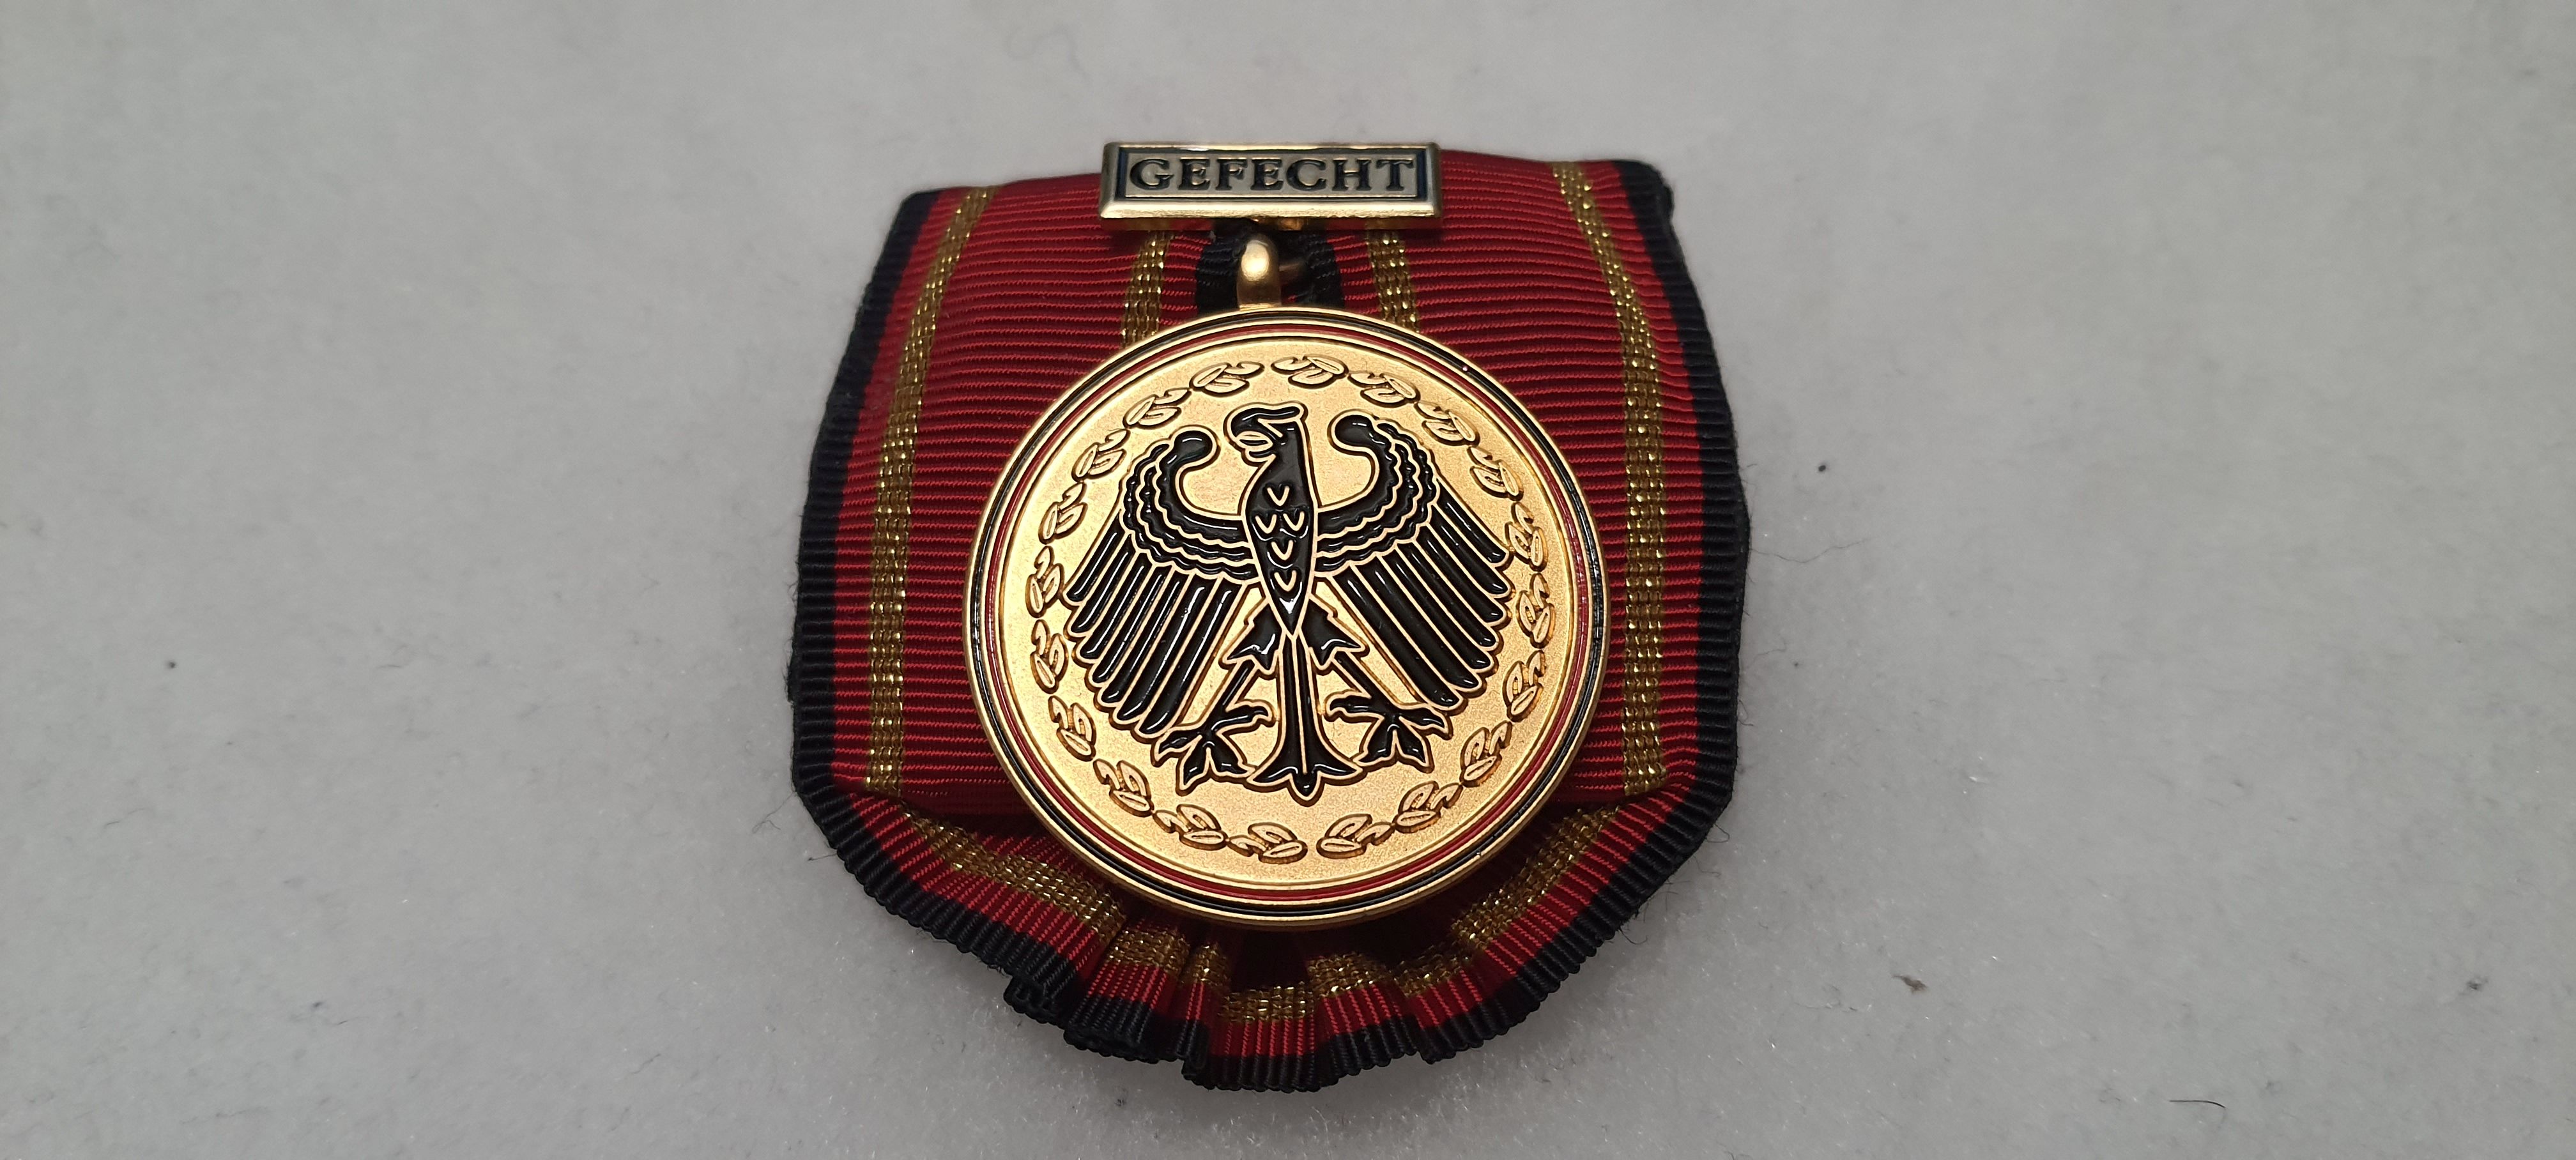 Bundeswehr Einsatzmedaille Gefecht Original Orden am Band